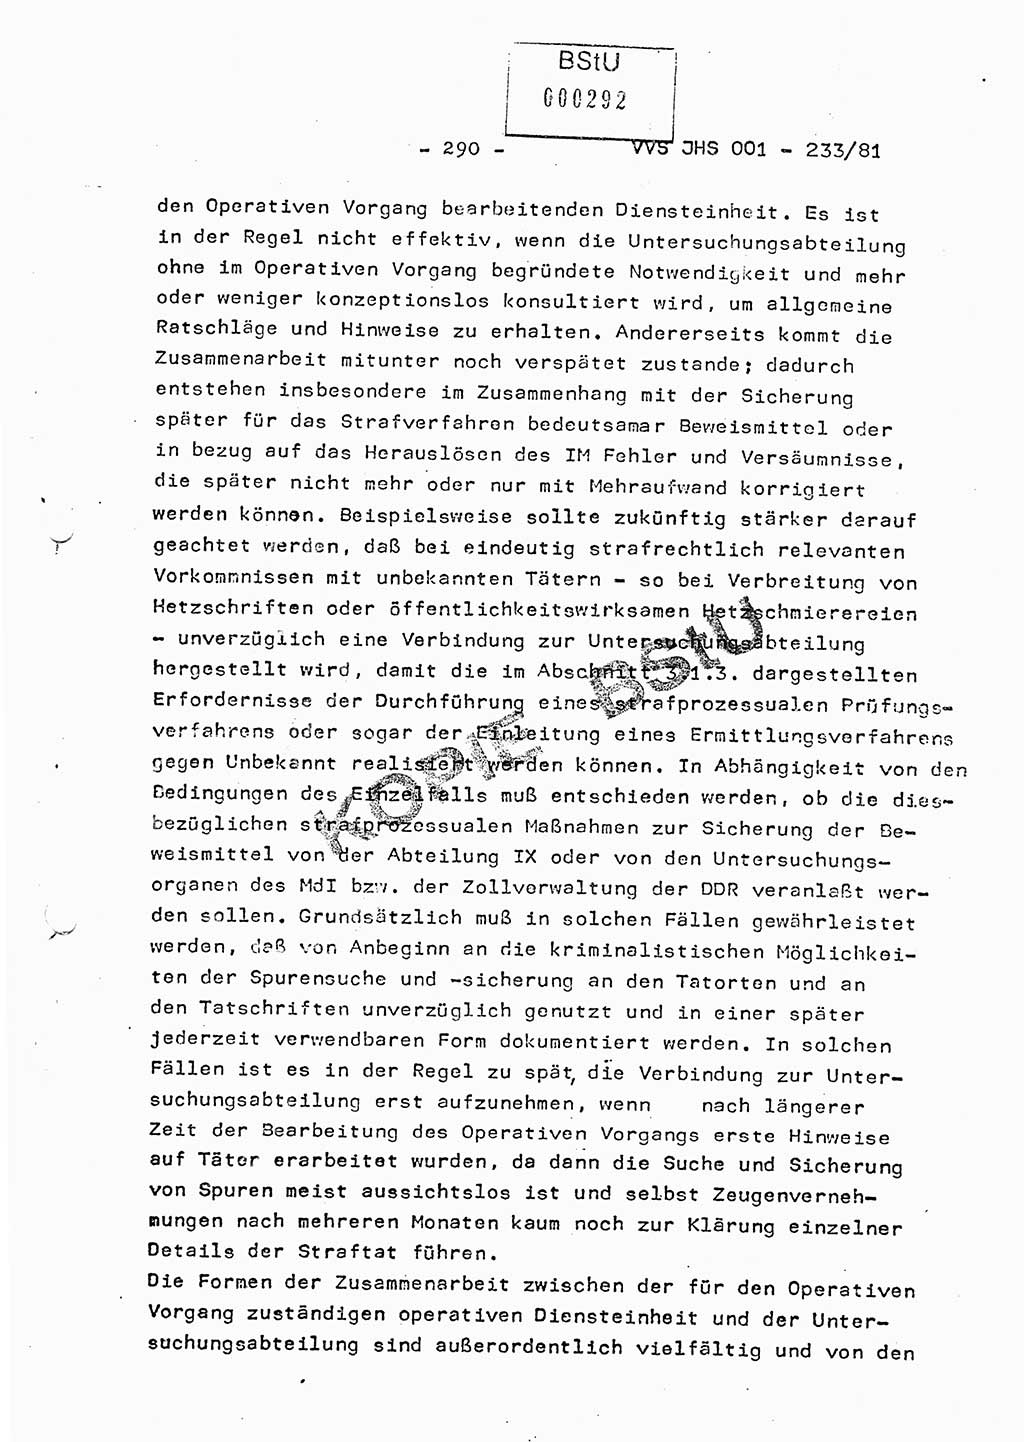 Dissertation Oberstleutnant Horst Zank (JHS), Oberstleutnant Dr. Karl-Heinz Knoblauch (JHS), Oberstleutnant Gustav-Adolf Kowalewski (HA Ⅸ), Oberstleutnant Wolfgang Plötner (HA Ⅸ), Ministerium für Staatssicherheit (MfS) [Deutsche Demokratische Republik (DDR)], Juristische Hochschule (JHS), Vertrauliche Verschlußsache (VVS) o001-233/81, Potsdam 1981, Blatt 290 (Diss. MfS DDR JHS VVS o001-233/81 1981, Bl. 290)